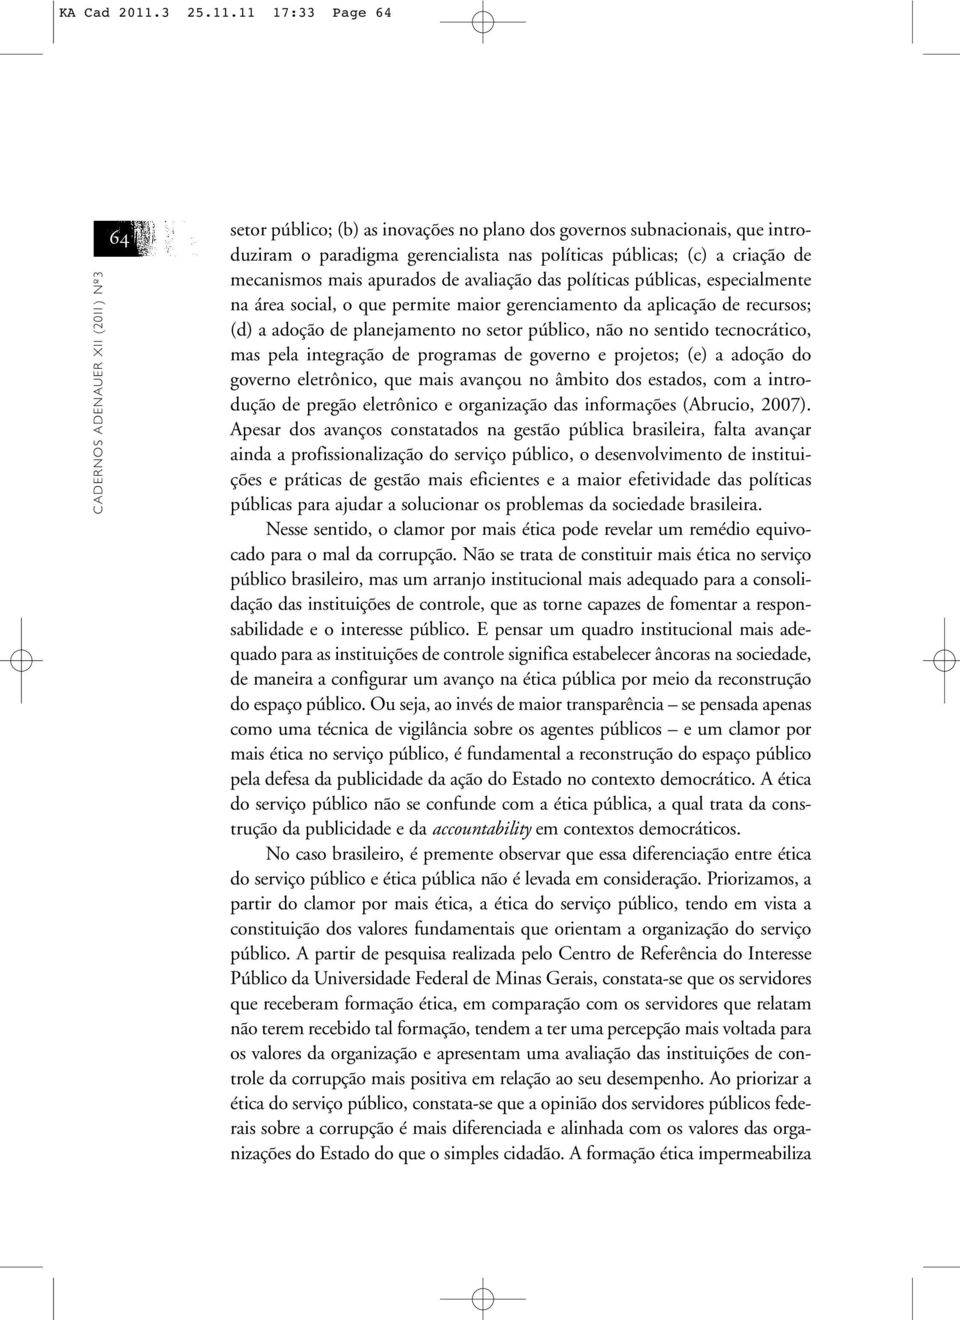 11 17:33 Page 64 CADERNOS ADENAUER XII (2011) Nº3 64 setor público; (b) as inovações no plano dos governos subnacionais, que introduziram o paradigma gerencialista nas políticas públicas; (c) a